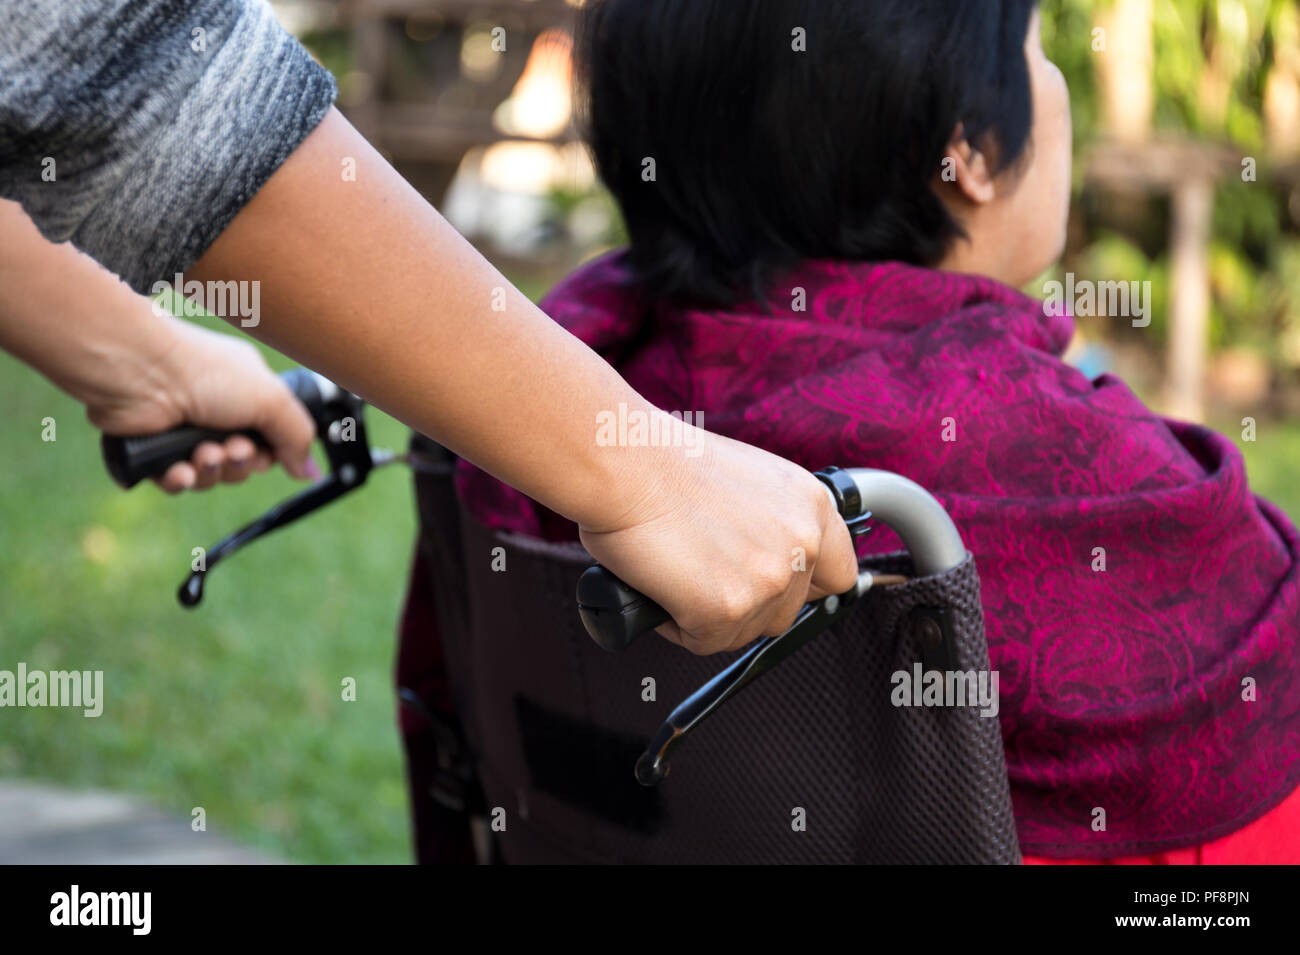 Caretaker pushing senior woman in wheel chair  Stock Photo